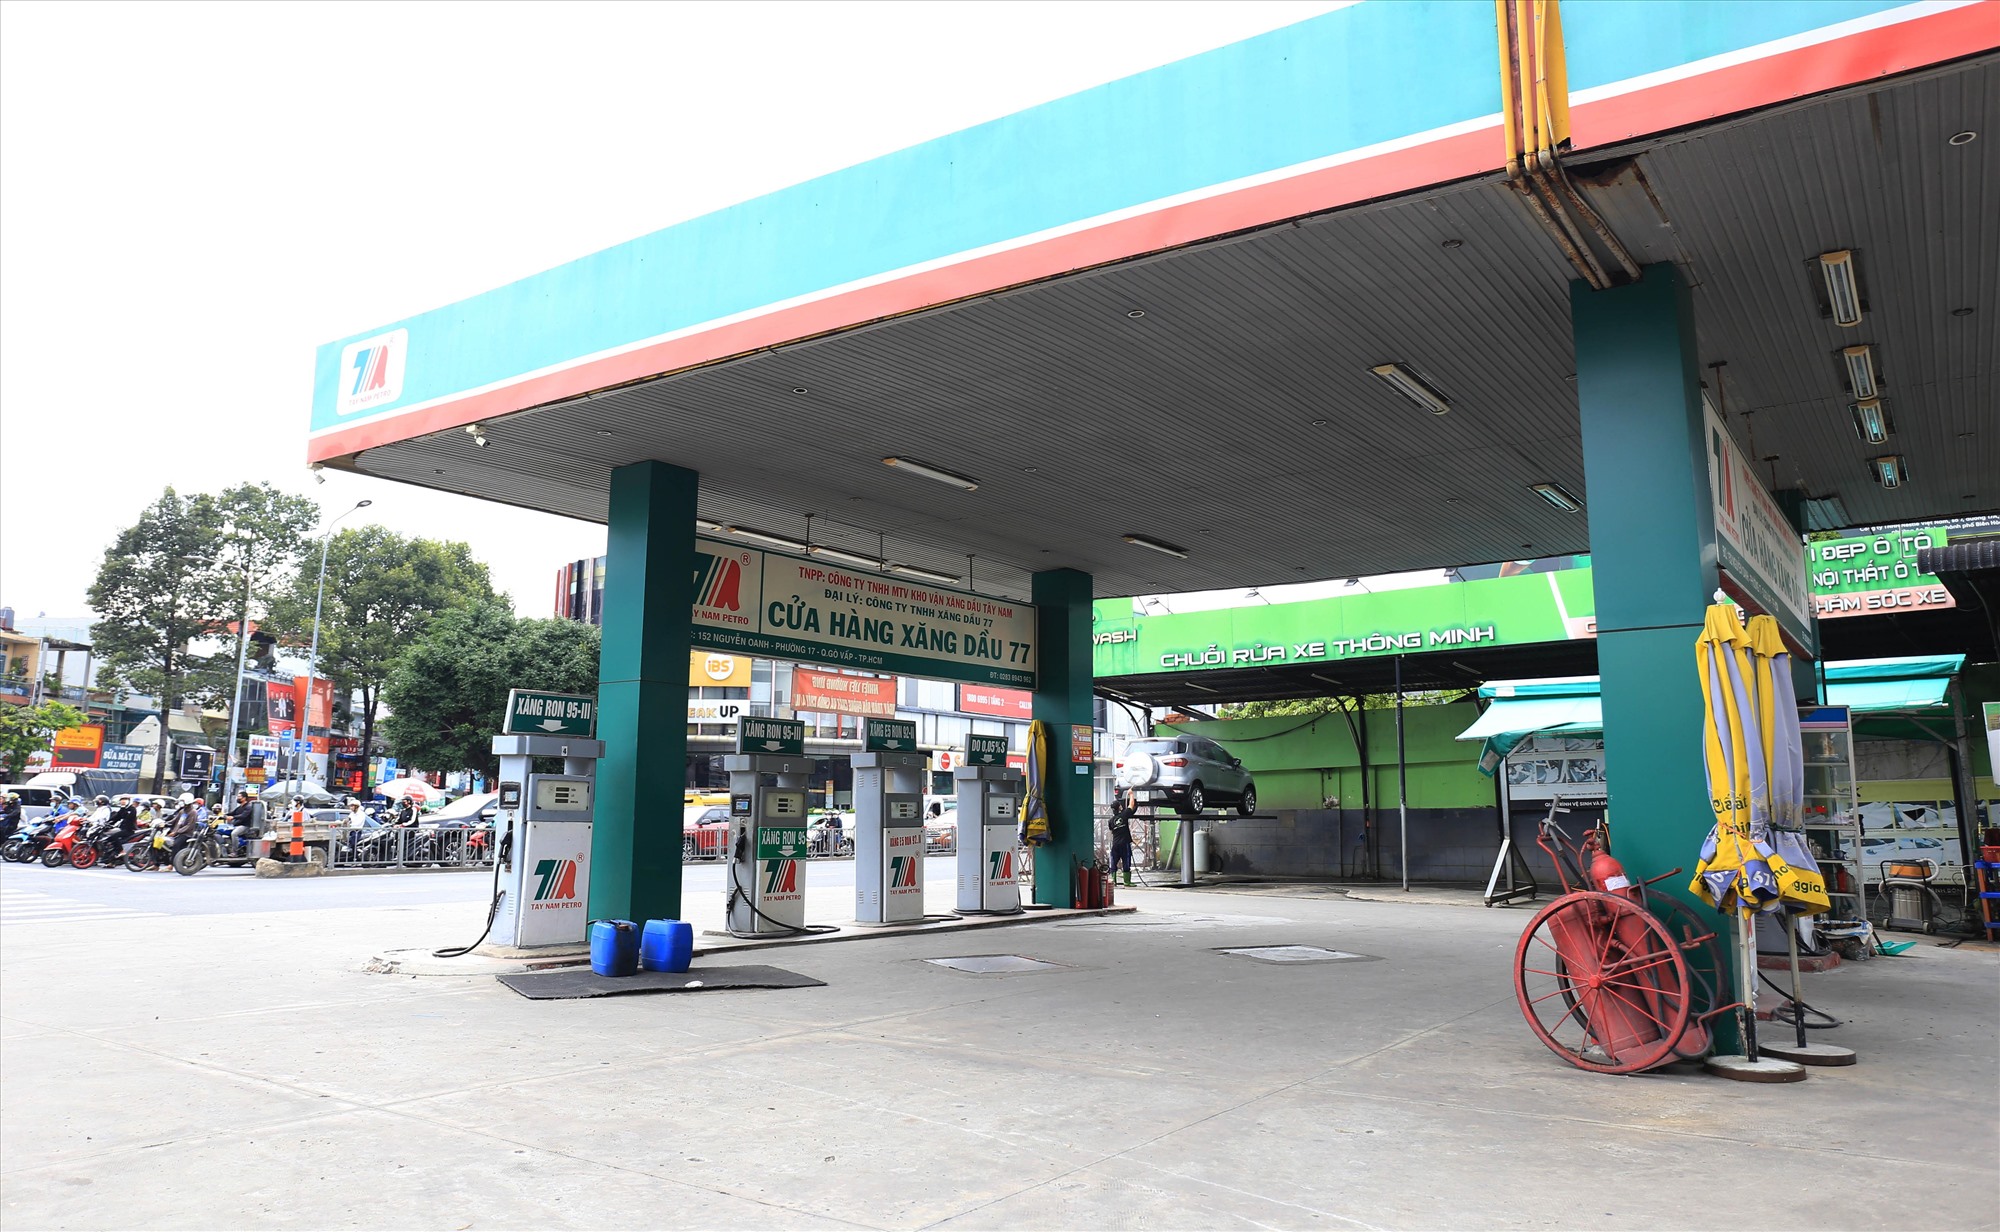 Cửa hàng xăng dầu 77 ở góc đường Nguyễn Oanh - Phan Văn Trị (Q.Gò Vấp) cũng hết xăng từ hôm qua. Hiện đang đợi xăng nhập về mới có thể hoạt động trở lại, dự kiến trong ngày mai.